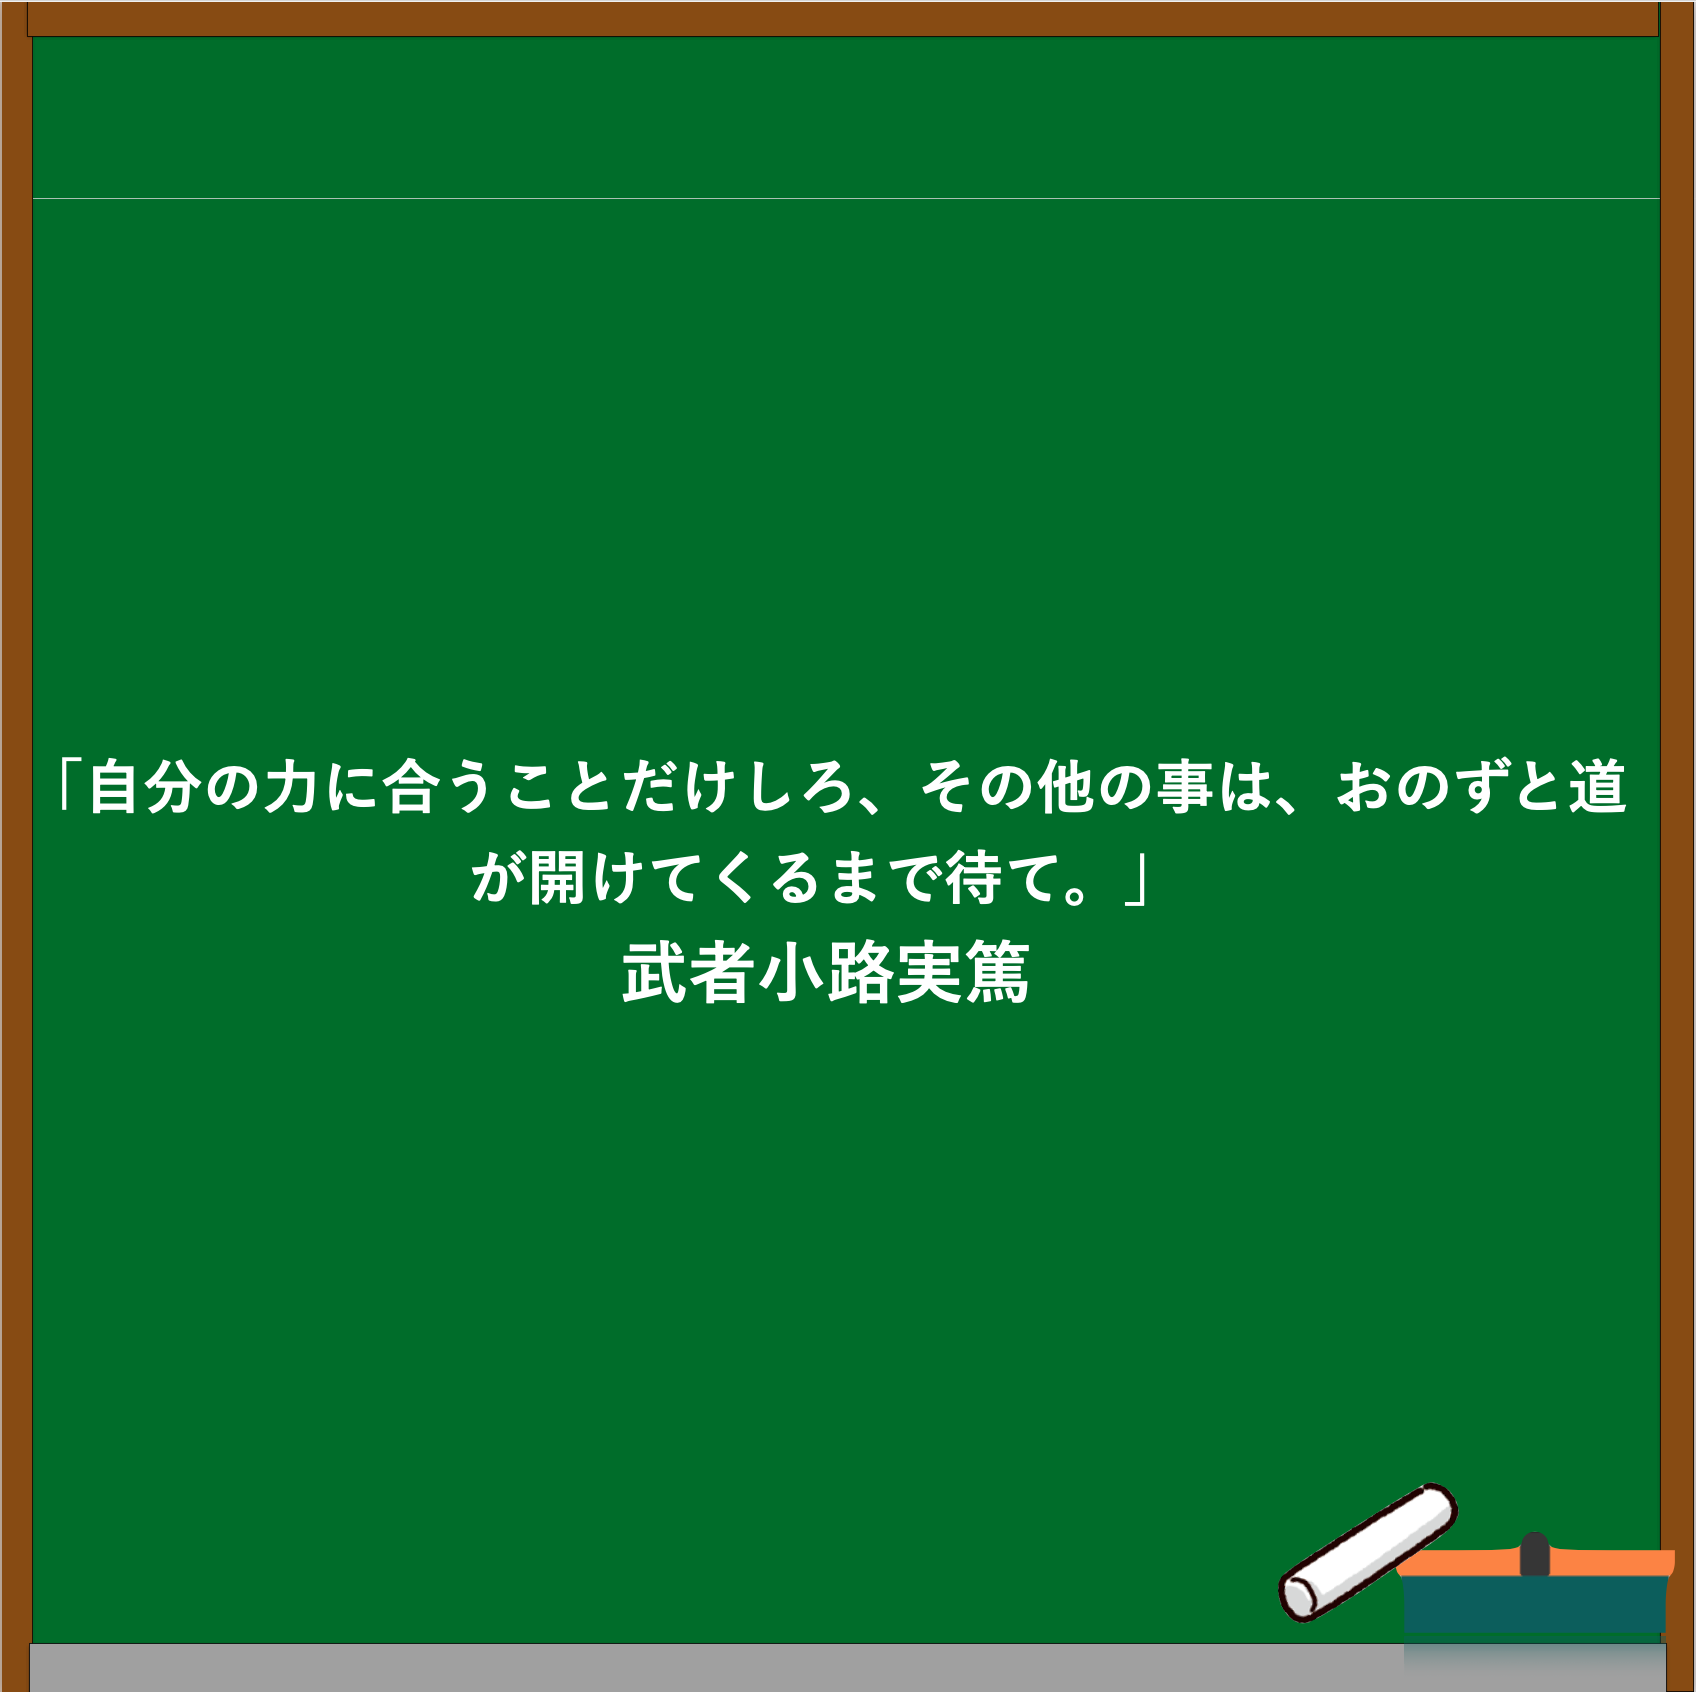 武者小路実篤の名言ブログのアイキャッチ画像